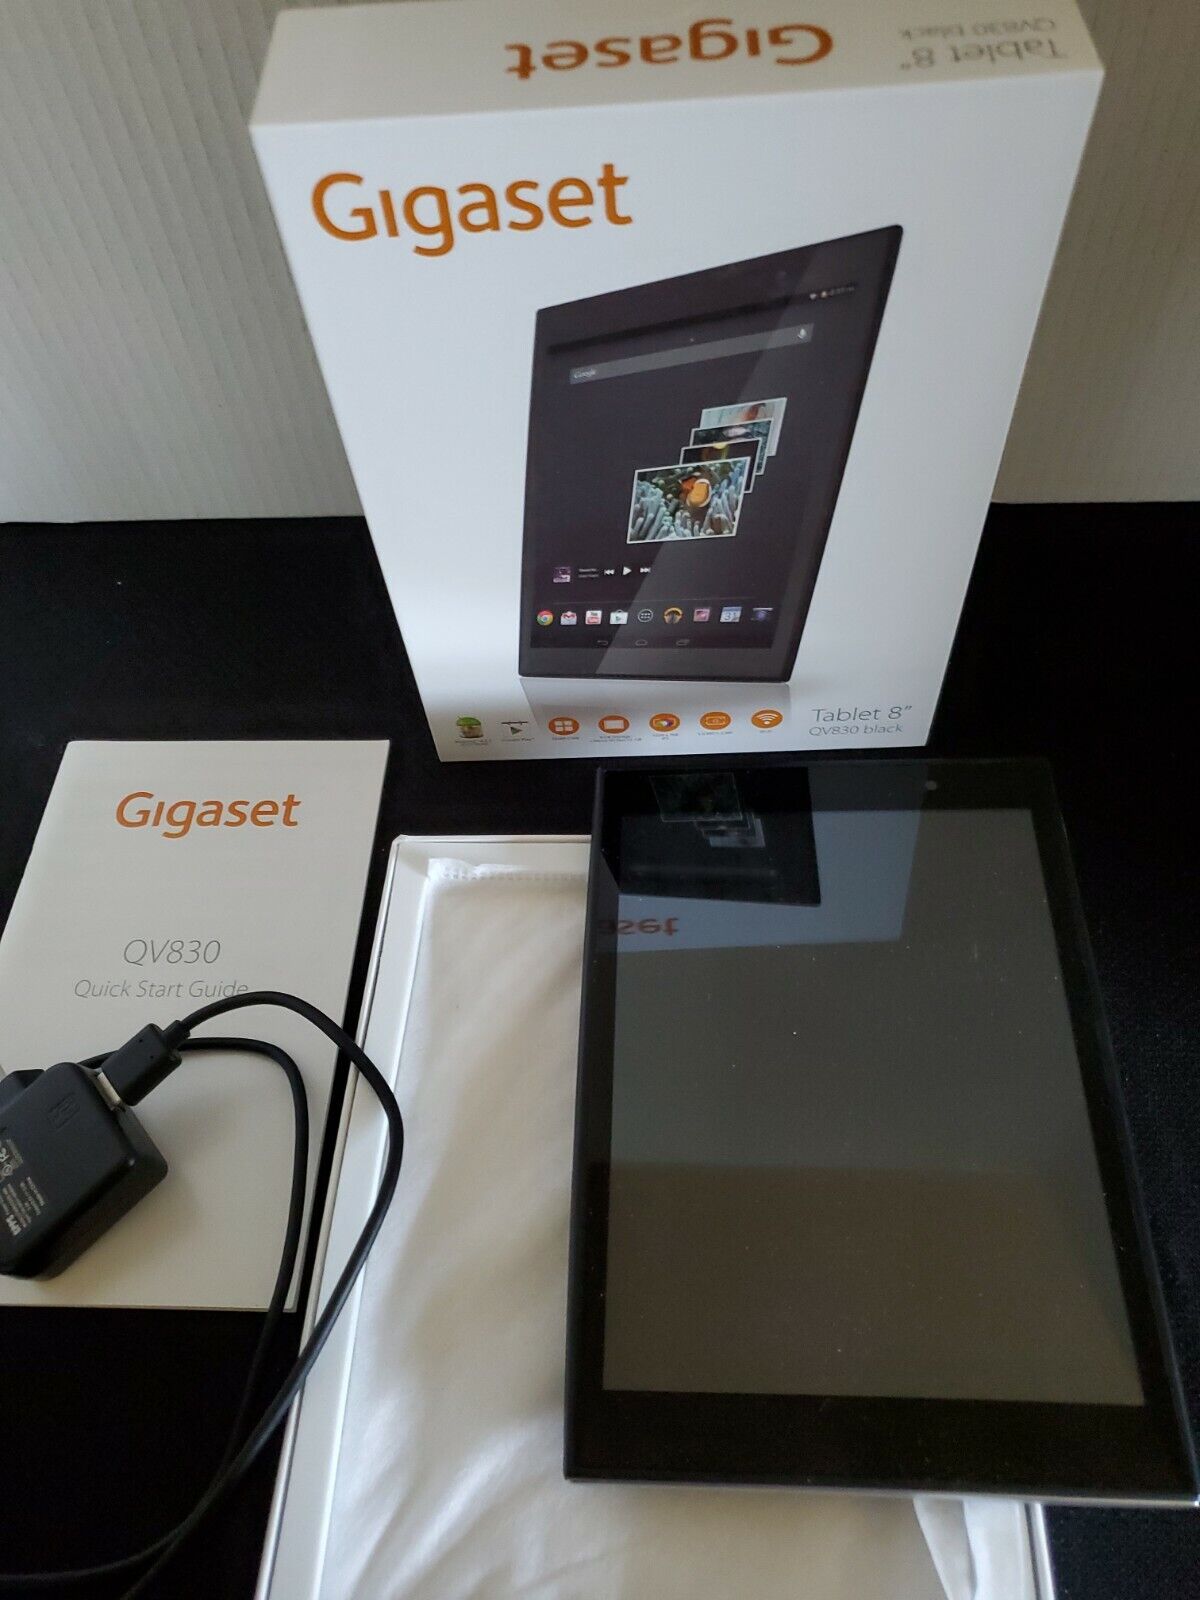 Gigaset Tablet 8" QV830 Black